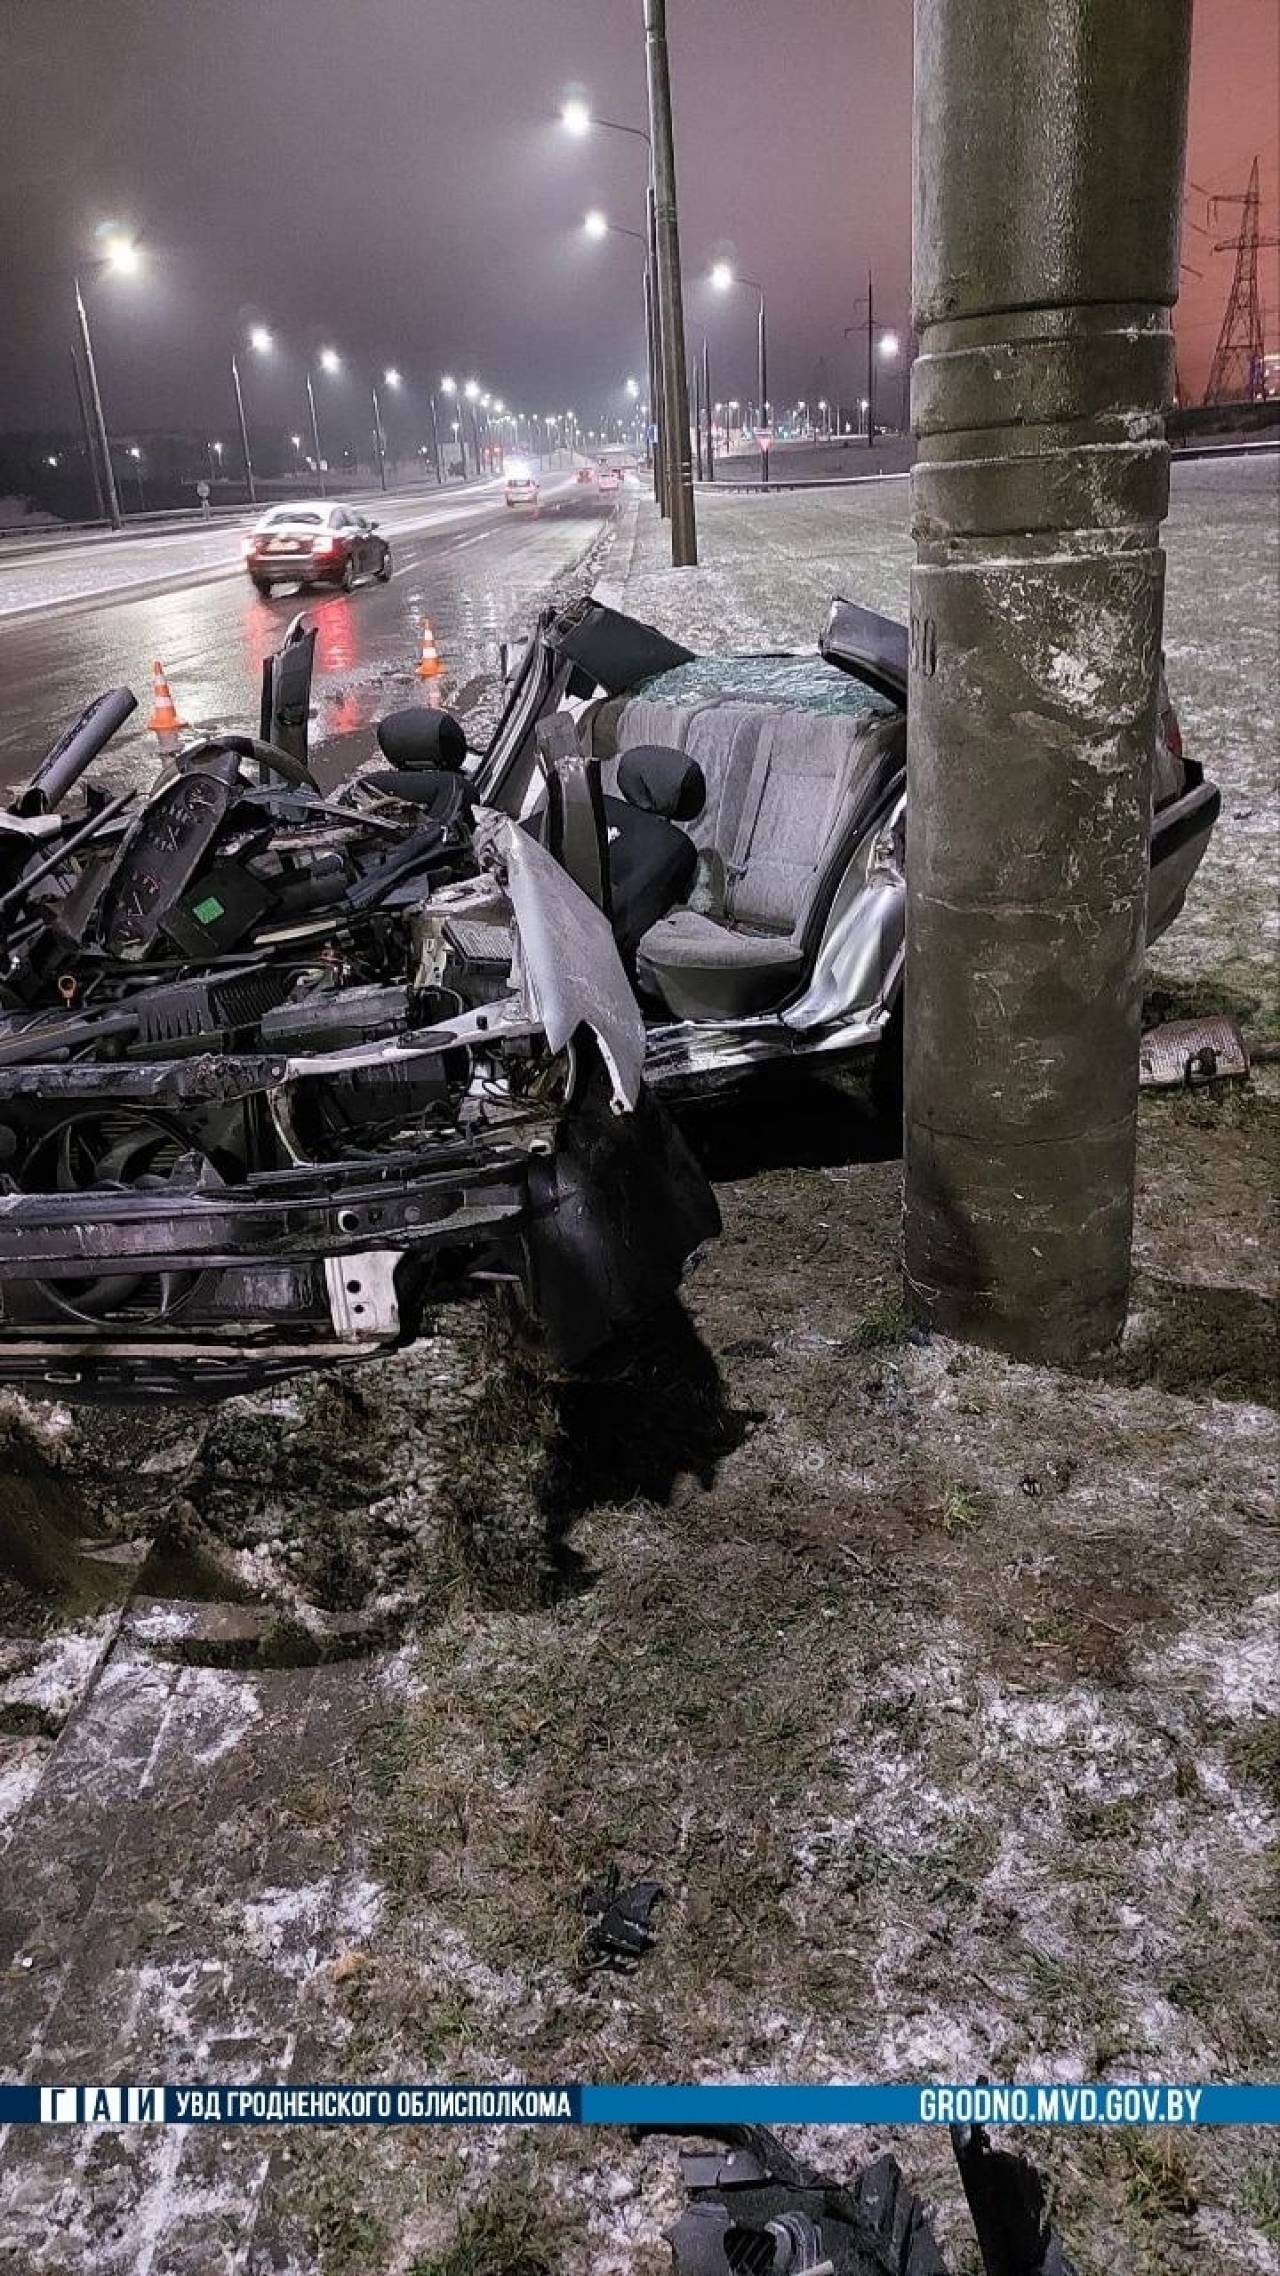 Серьезная авария на кольцевой в Гродно — Peugeot ушел с проезжей части в столб, водитель госпитализирован